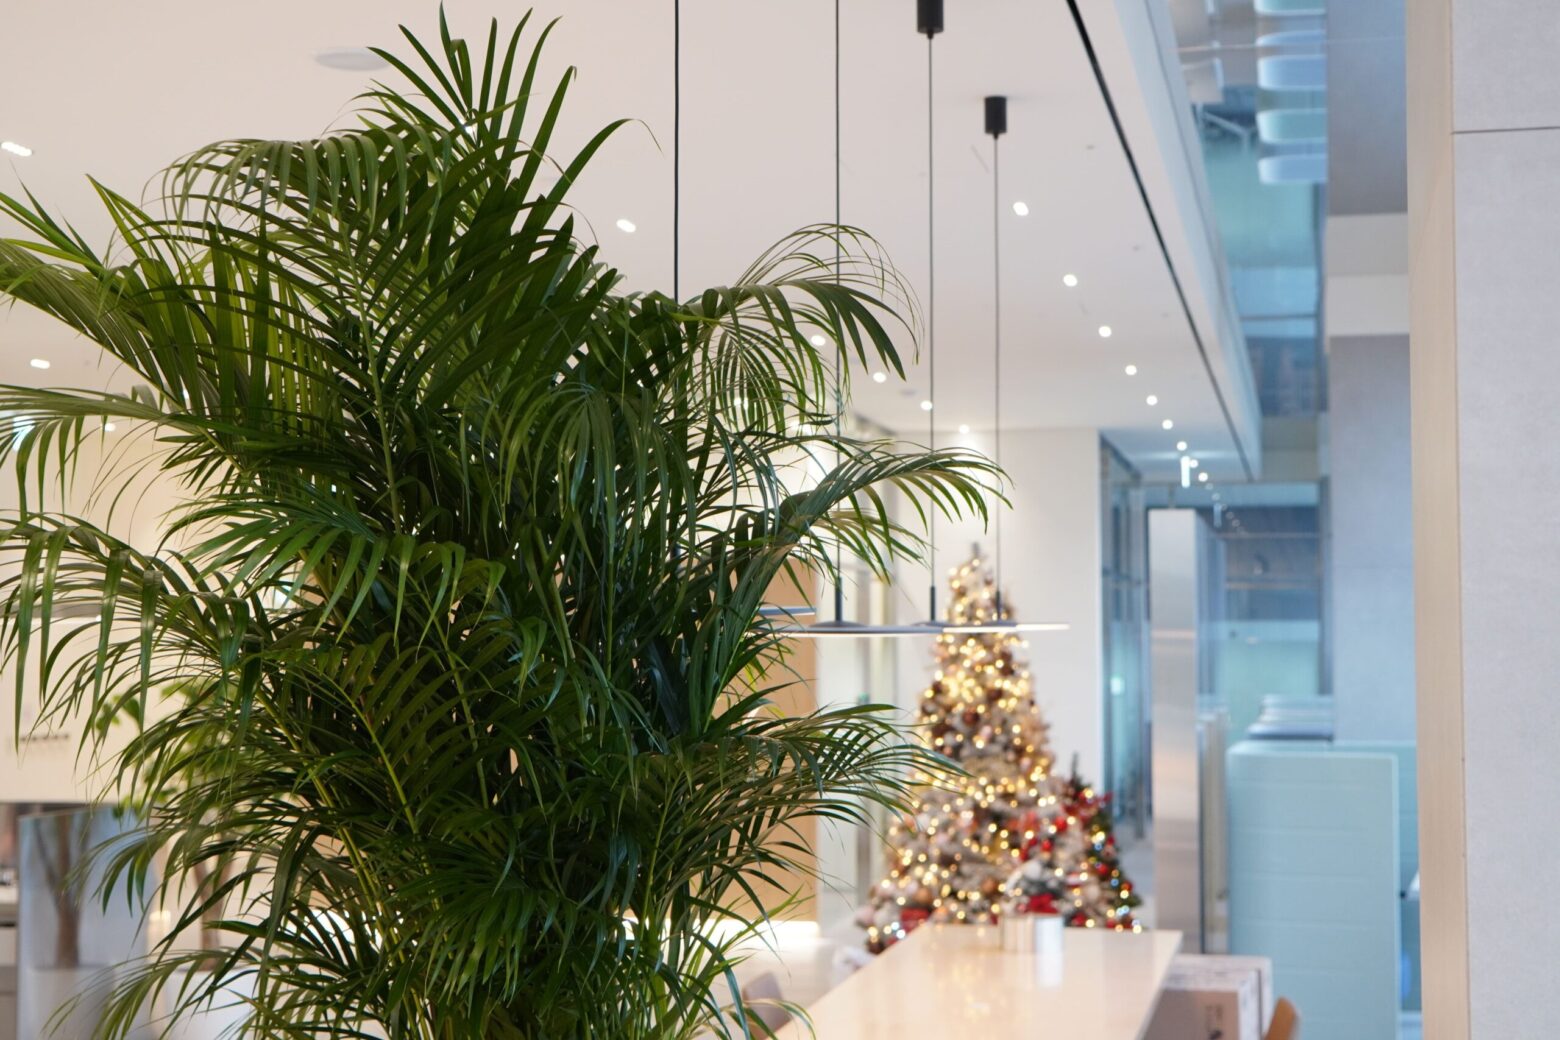 어느 기업 휴게실에 크리스마스 트리와 함께 장식된 아레카야자. 
식물은 그 자체만으로도 빛나고, 공간의 다른 요소들을 더욱 빛나게 하는 역할을 한다. 